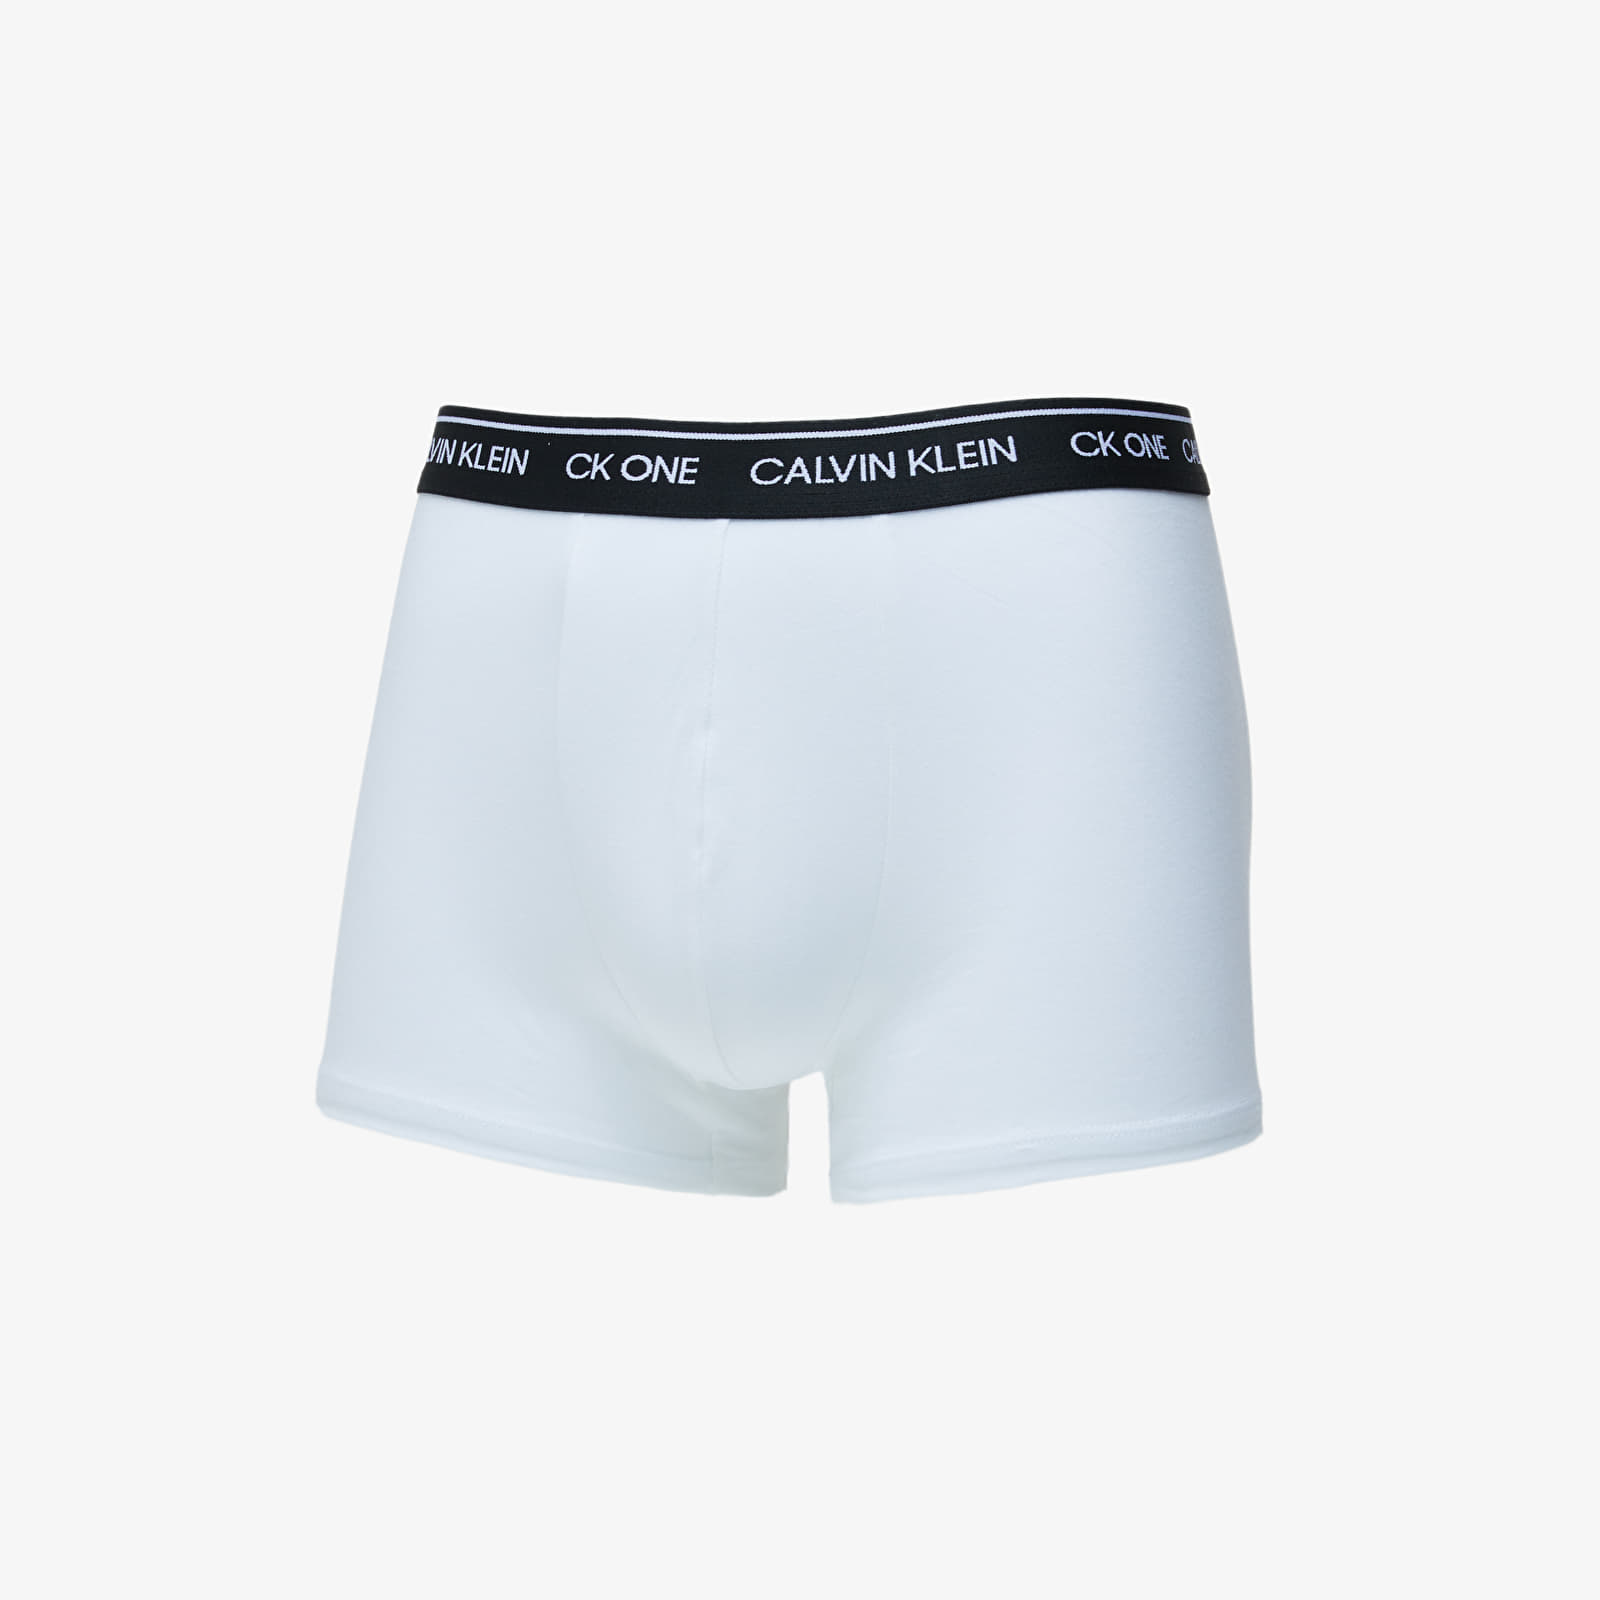 Boxer shorts Calvin Klein Trunk White